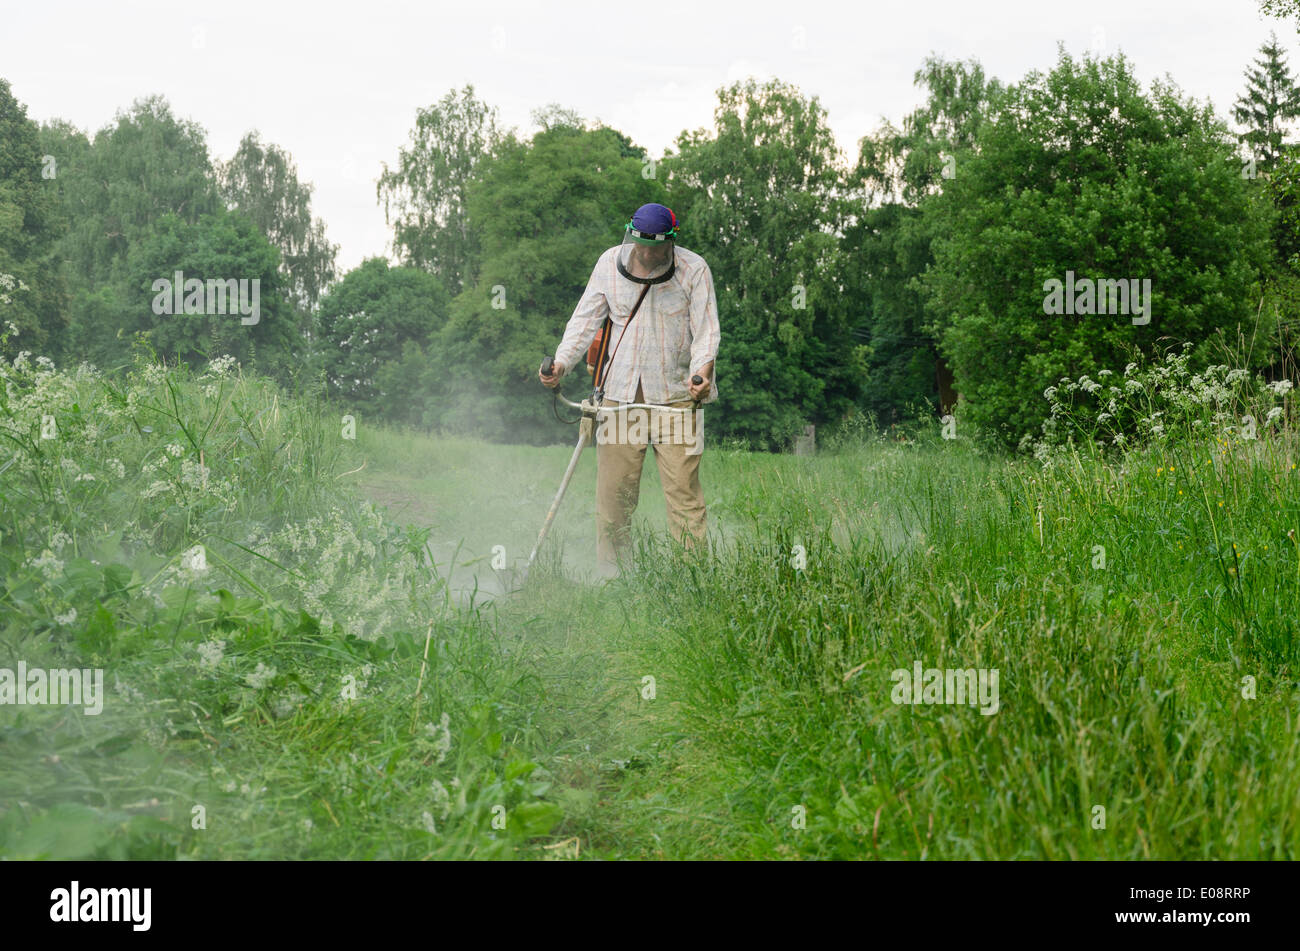 Worker man cut trim mow wet grass after rain Stock Photo